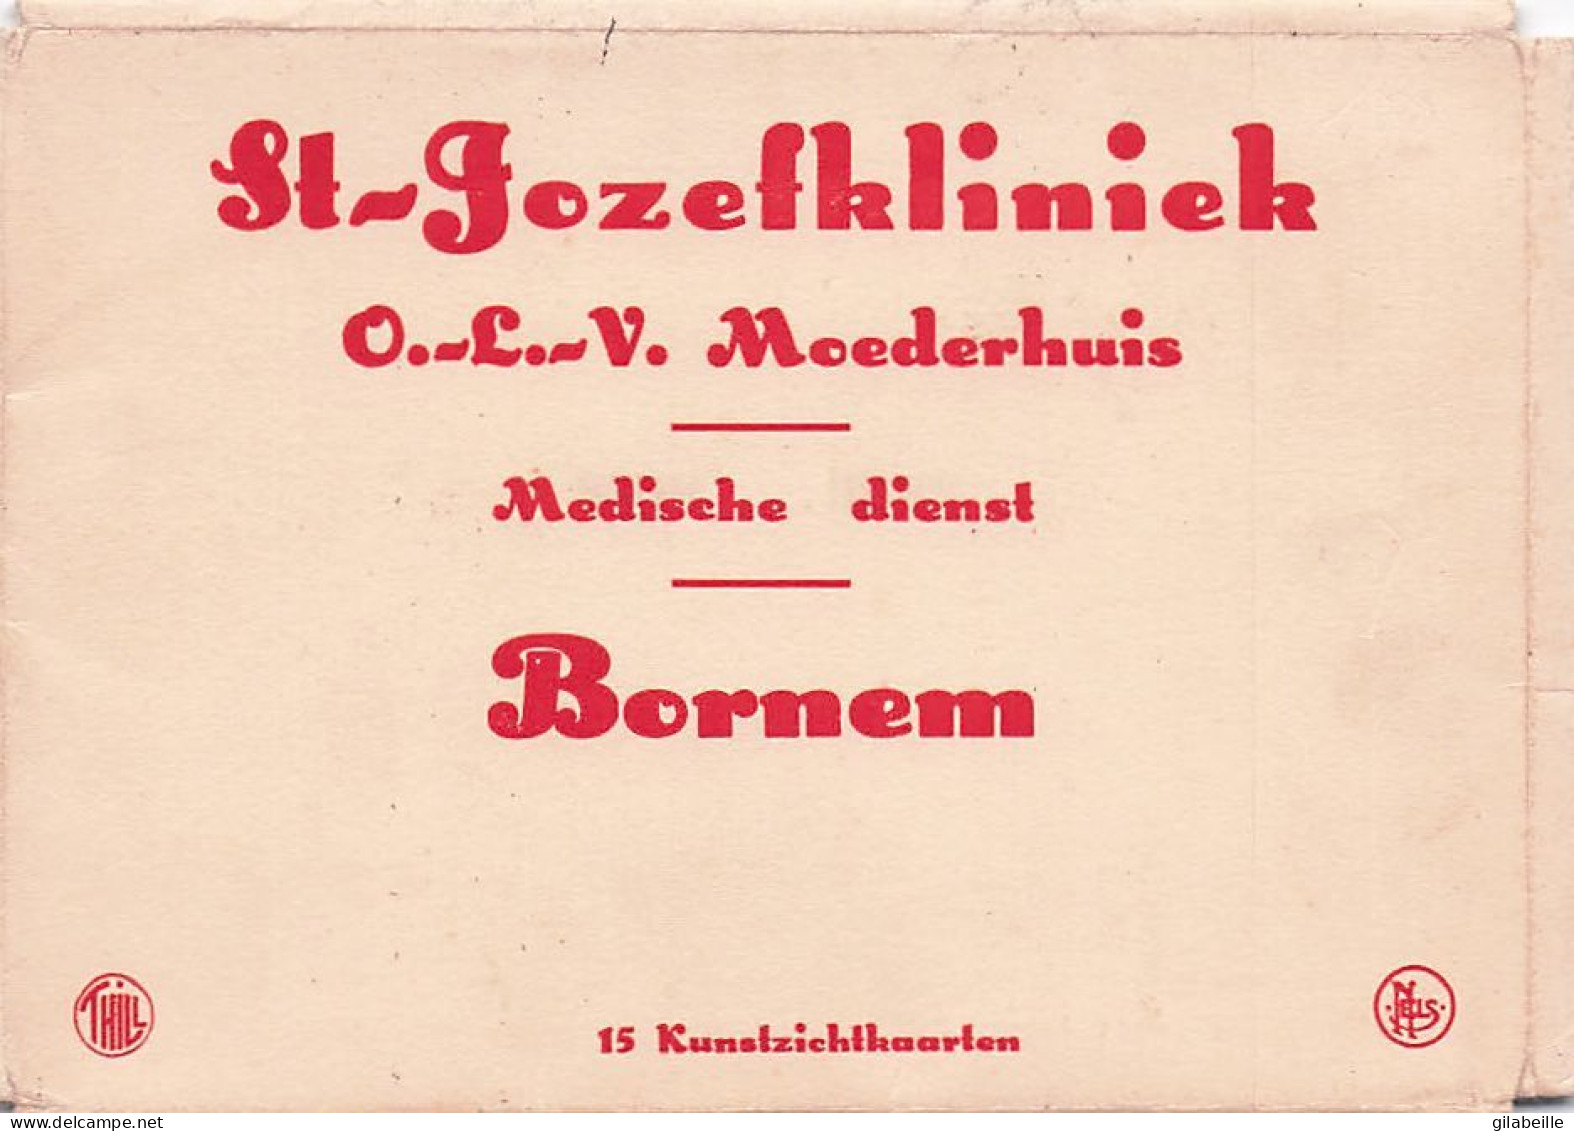 BORNEM - St Jozefklinick - O.L V Moederhuis - Mediche Dienst - 15 Kunstzichtkaarten - In Perfecte Staat - Bornem